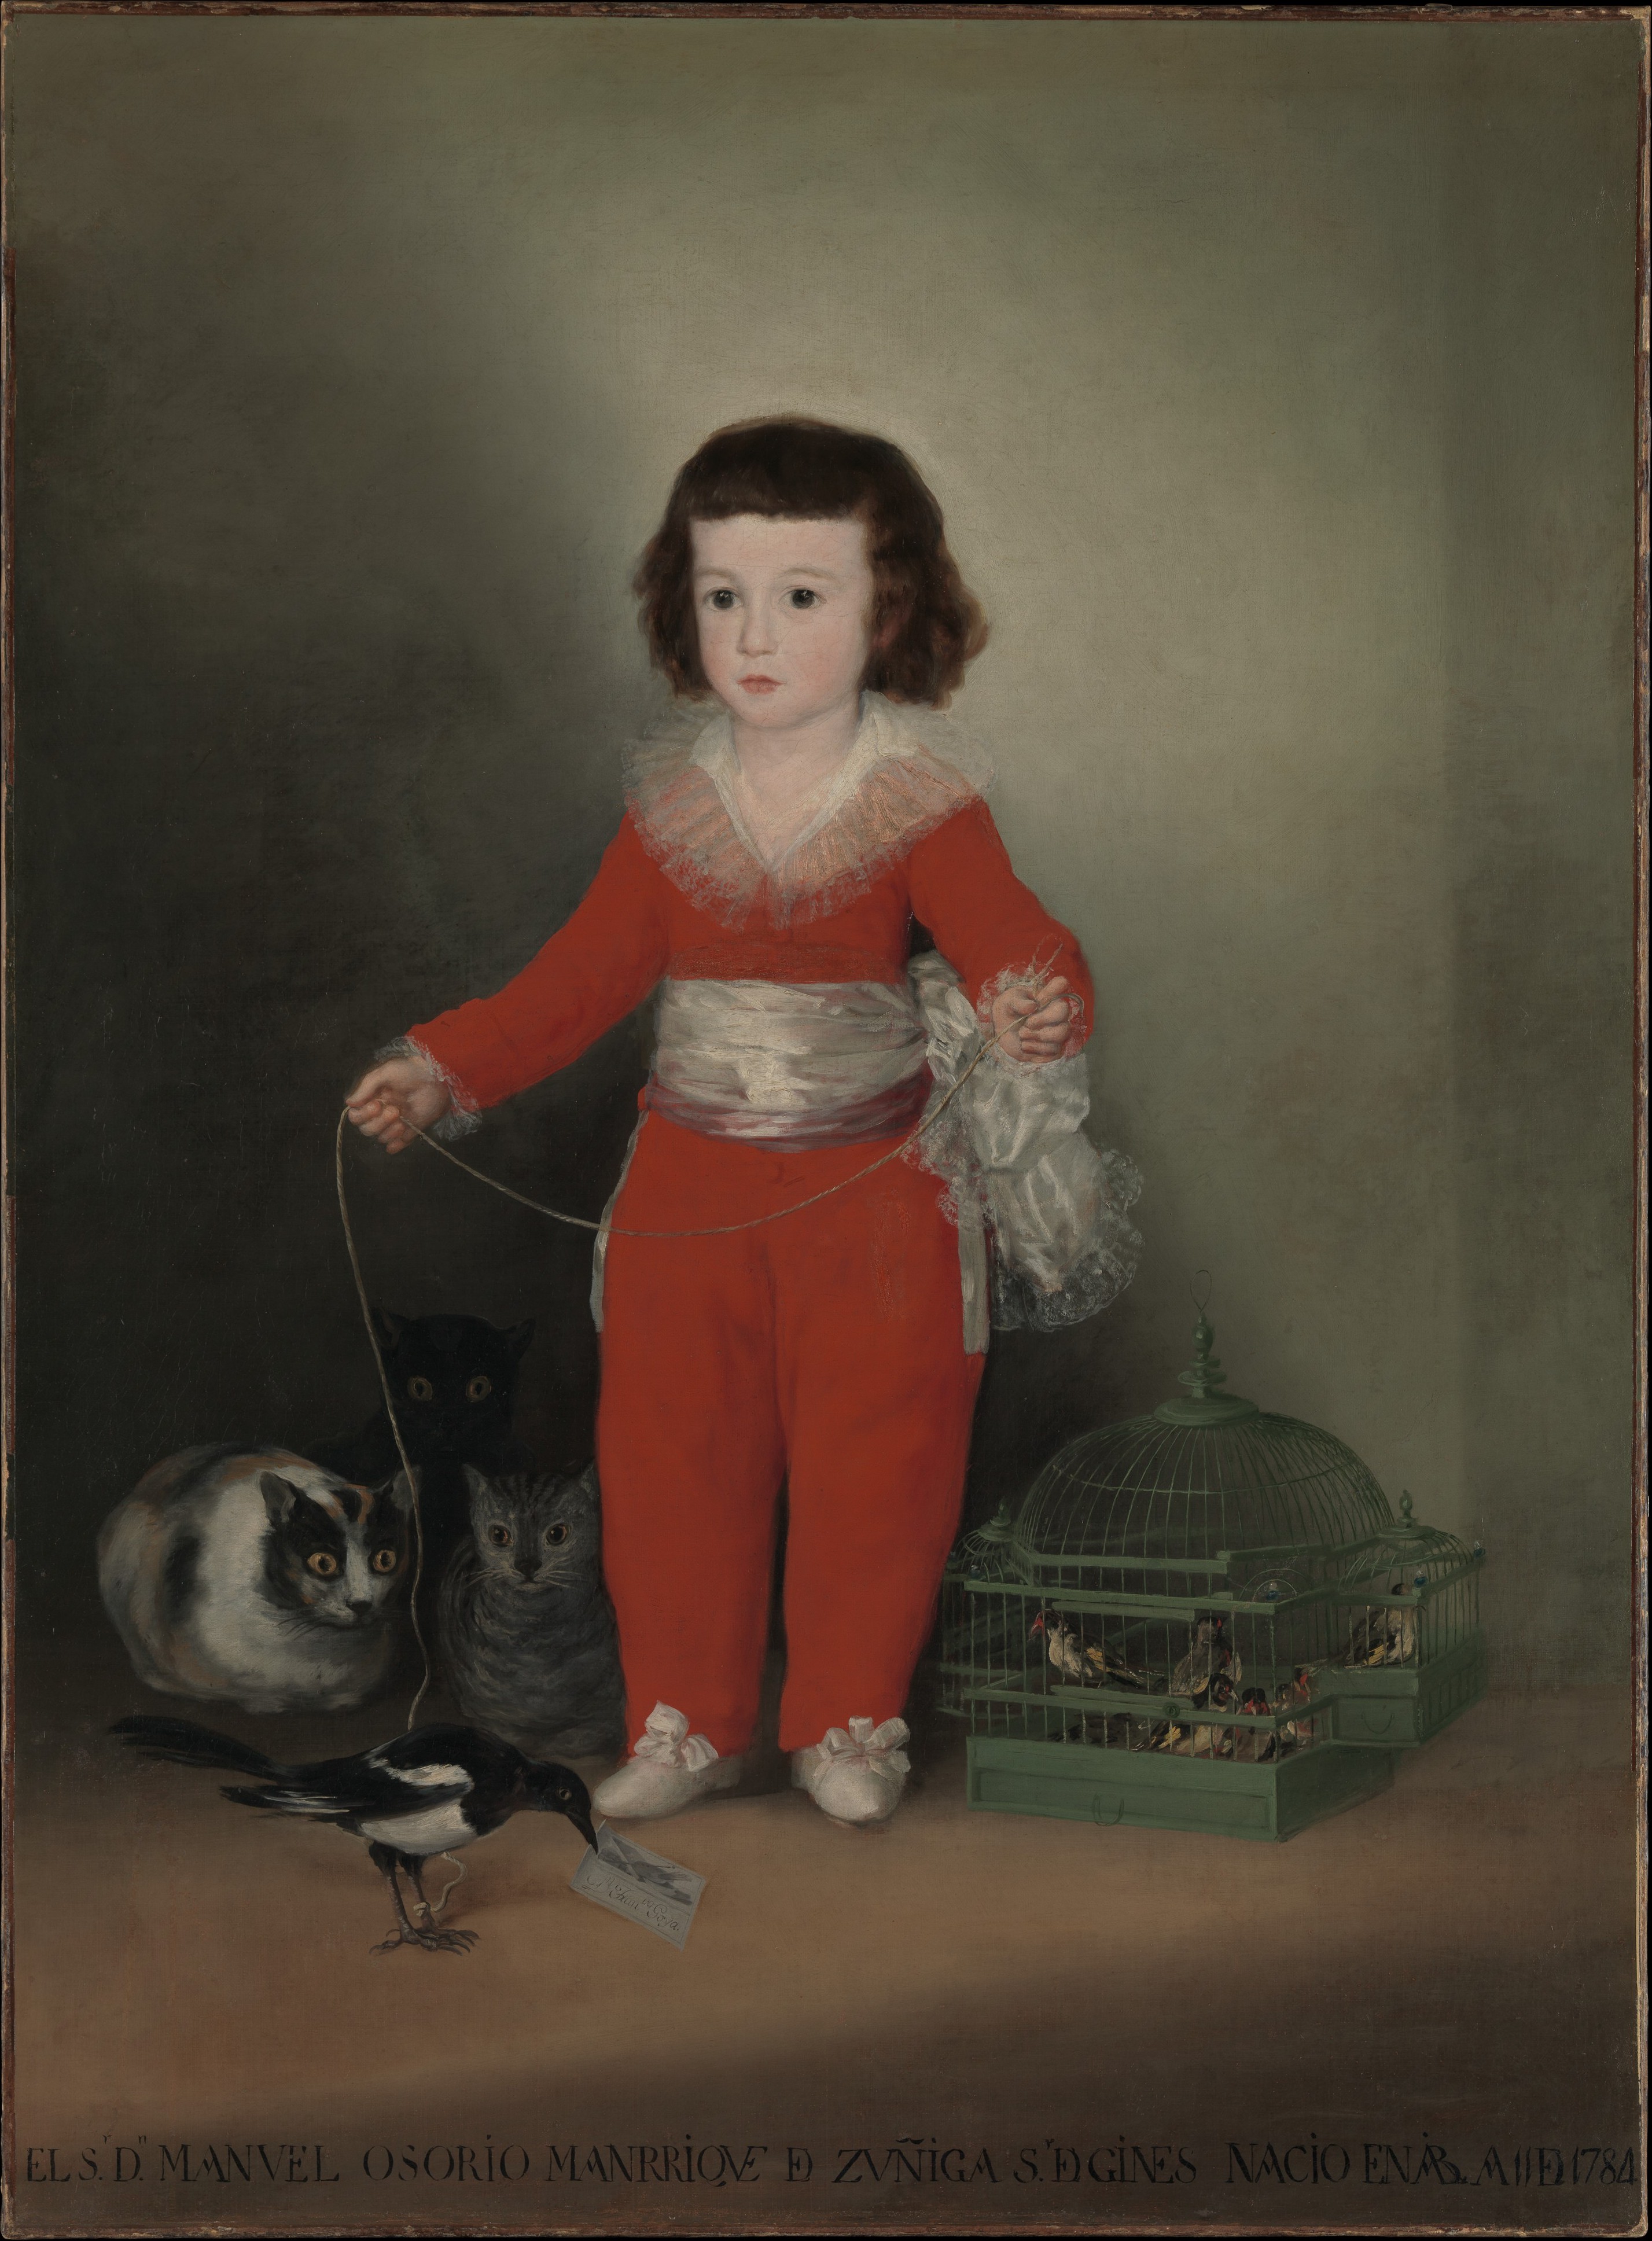 Manuel Osorio Manrique de Zuñiga by Francisco Goya - 1787–88 - 127 x 101.6 cm Metropolitan Museum of Art